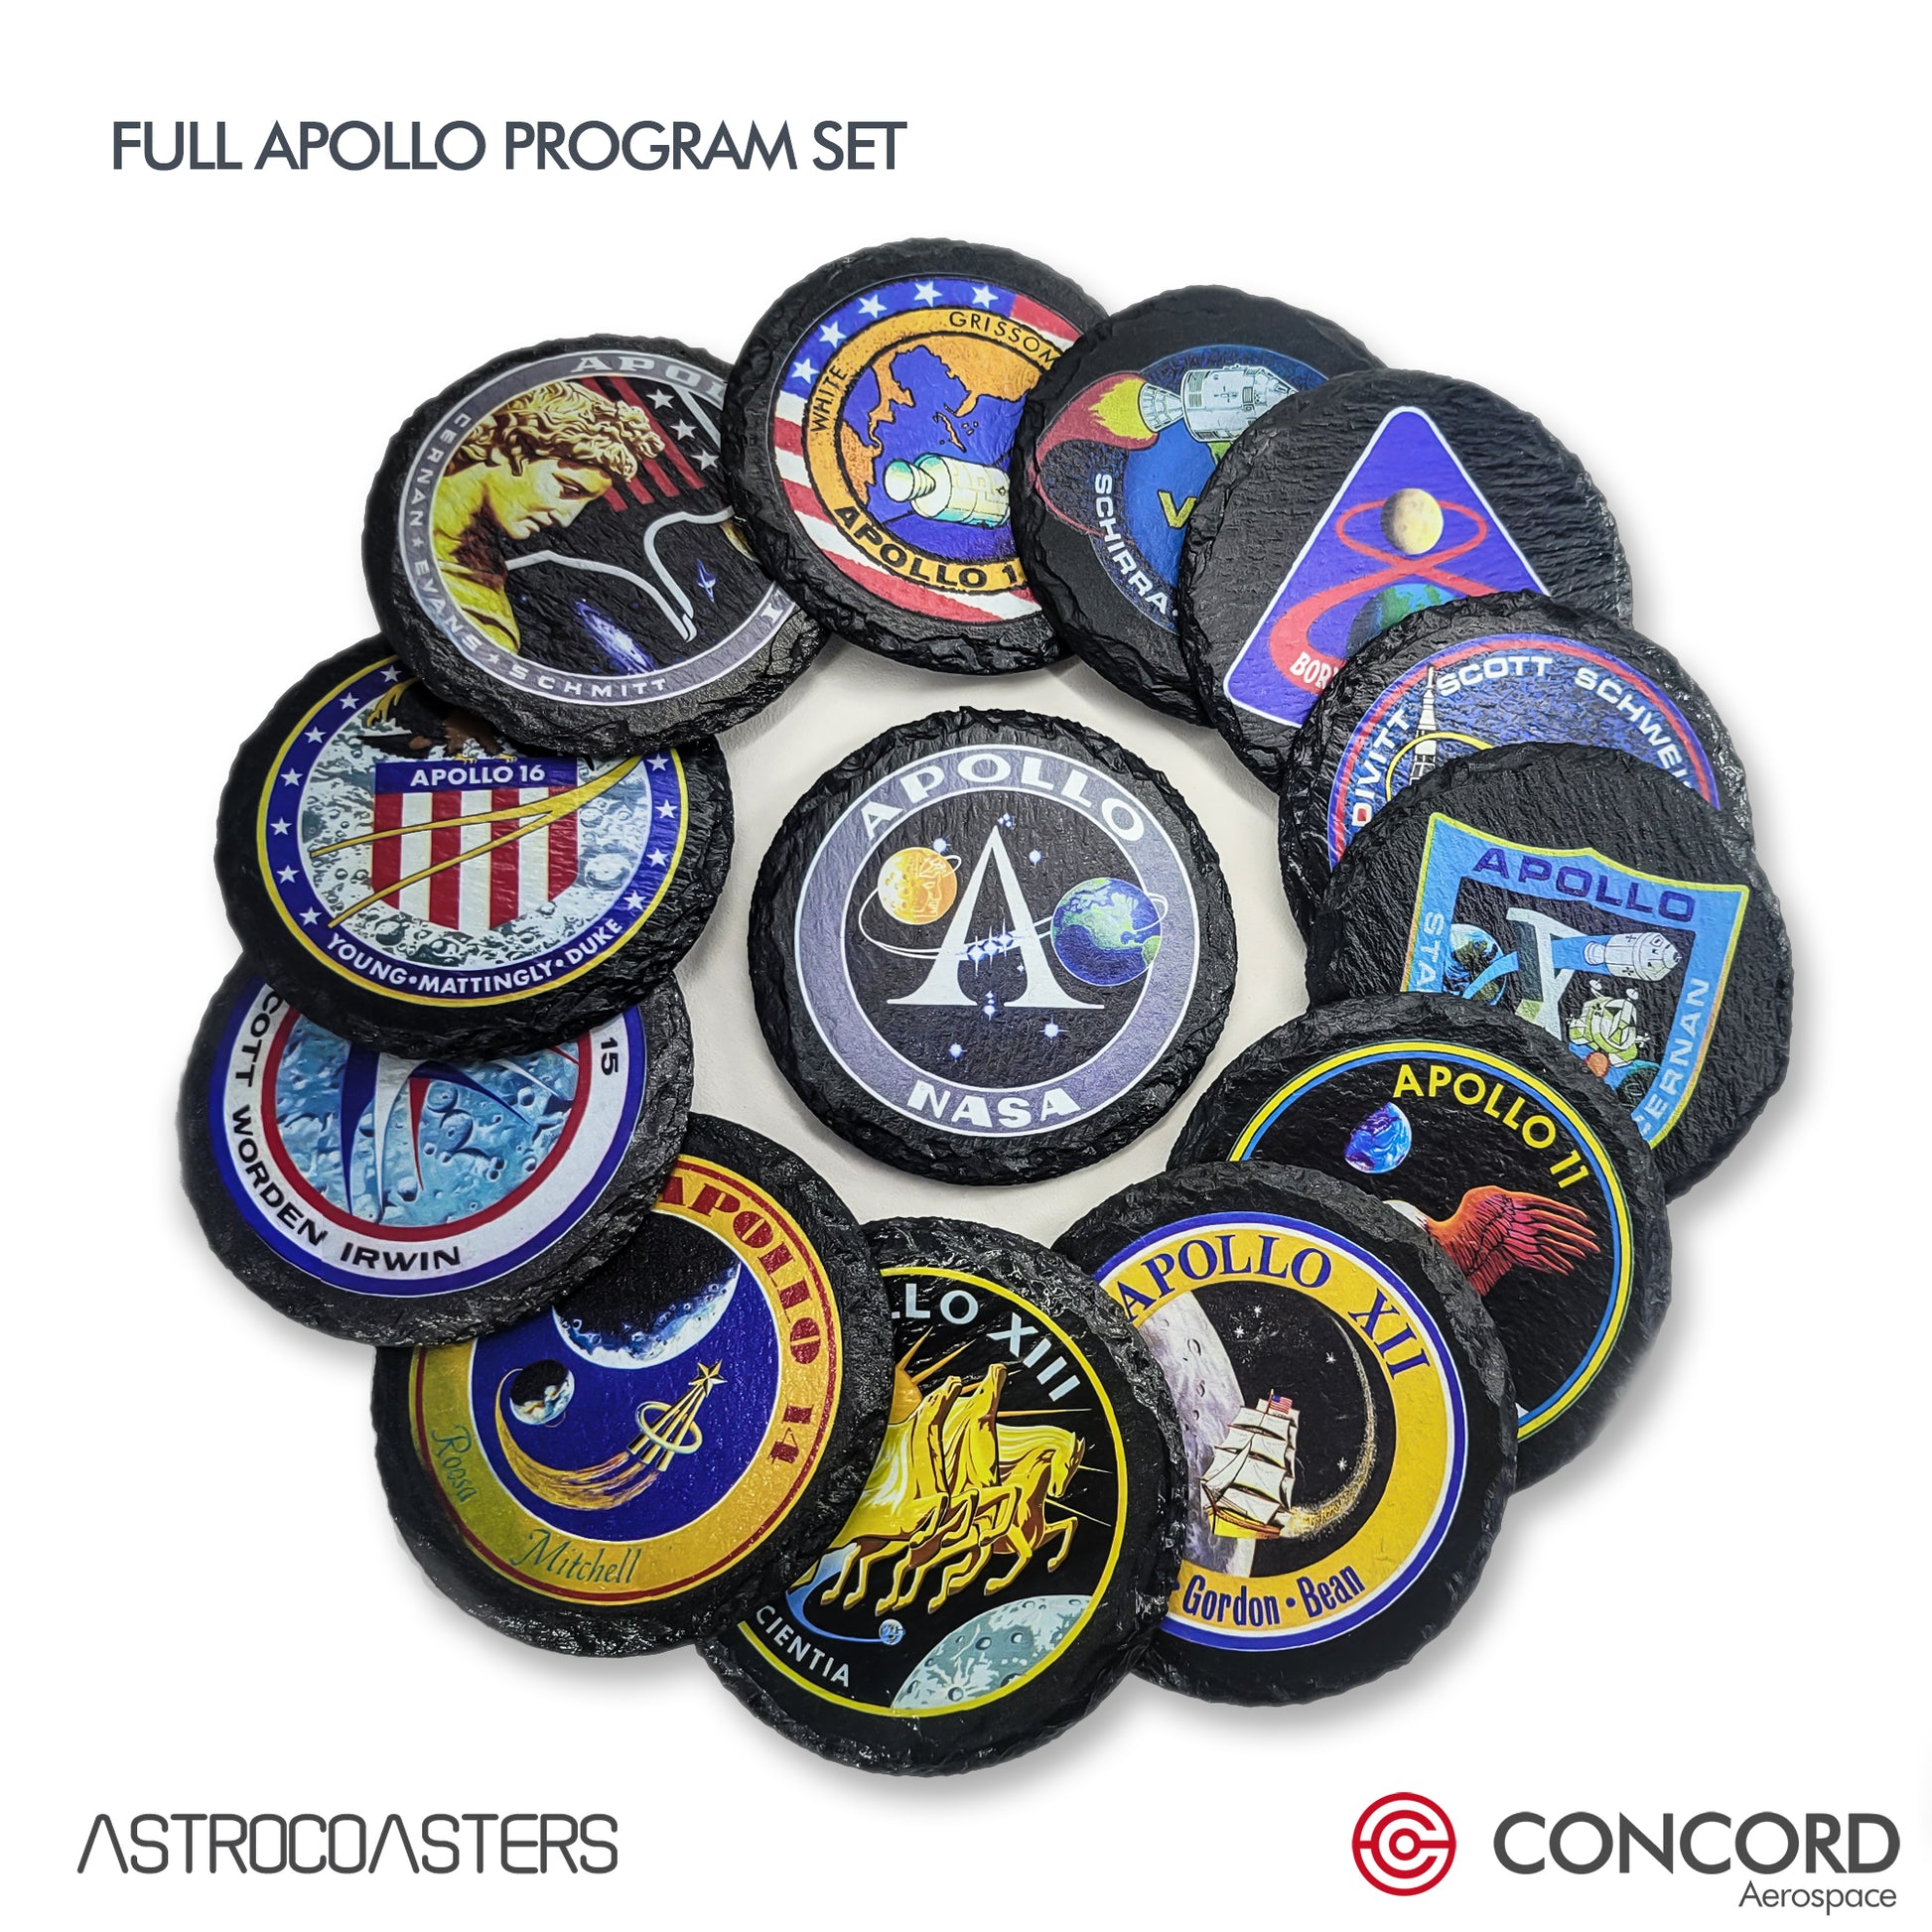 APOLLO 8 MISSION - SLATE COASTER - Concord Aerospace Concord Aerospace Concord Aerospace Coasters